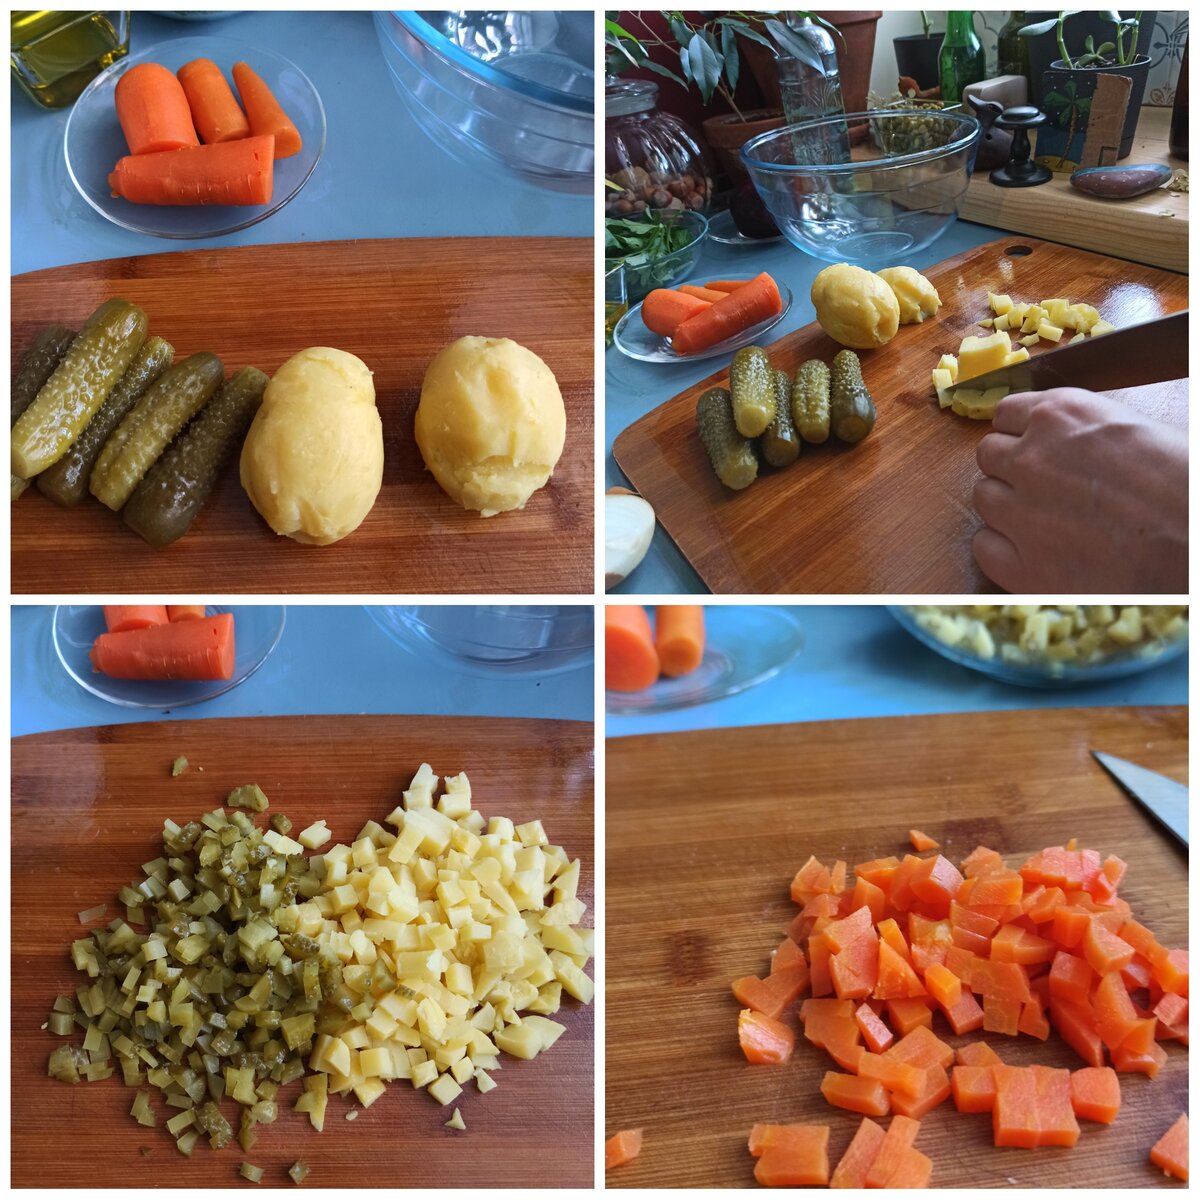 Картофель, огурцы и лук нарезаю маленькими кубиками.